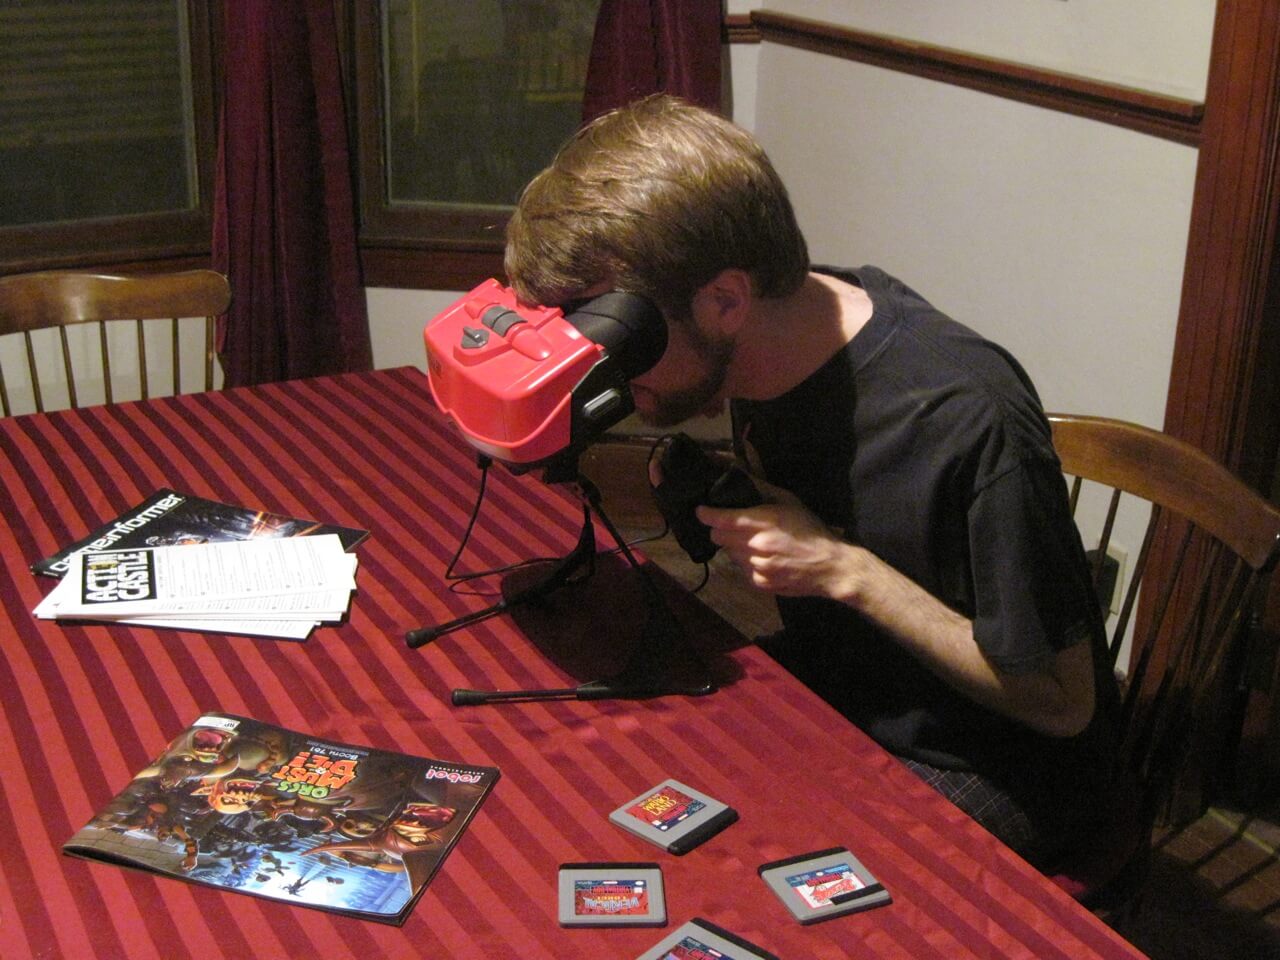 Virtual Boy de Nintendo